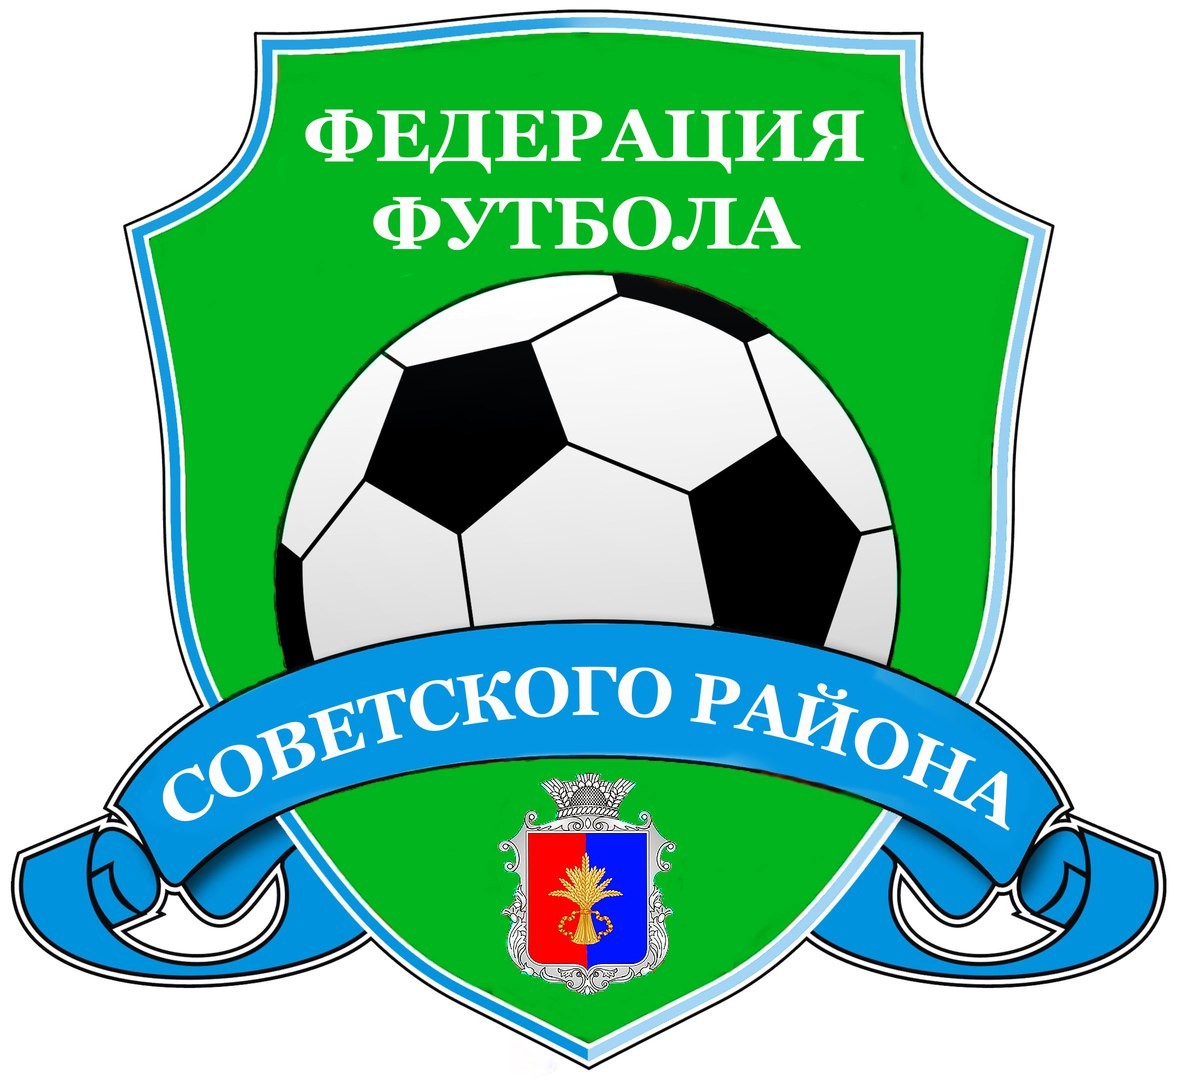 Сайт футбола московской области